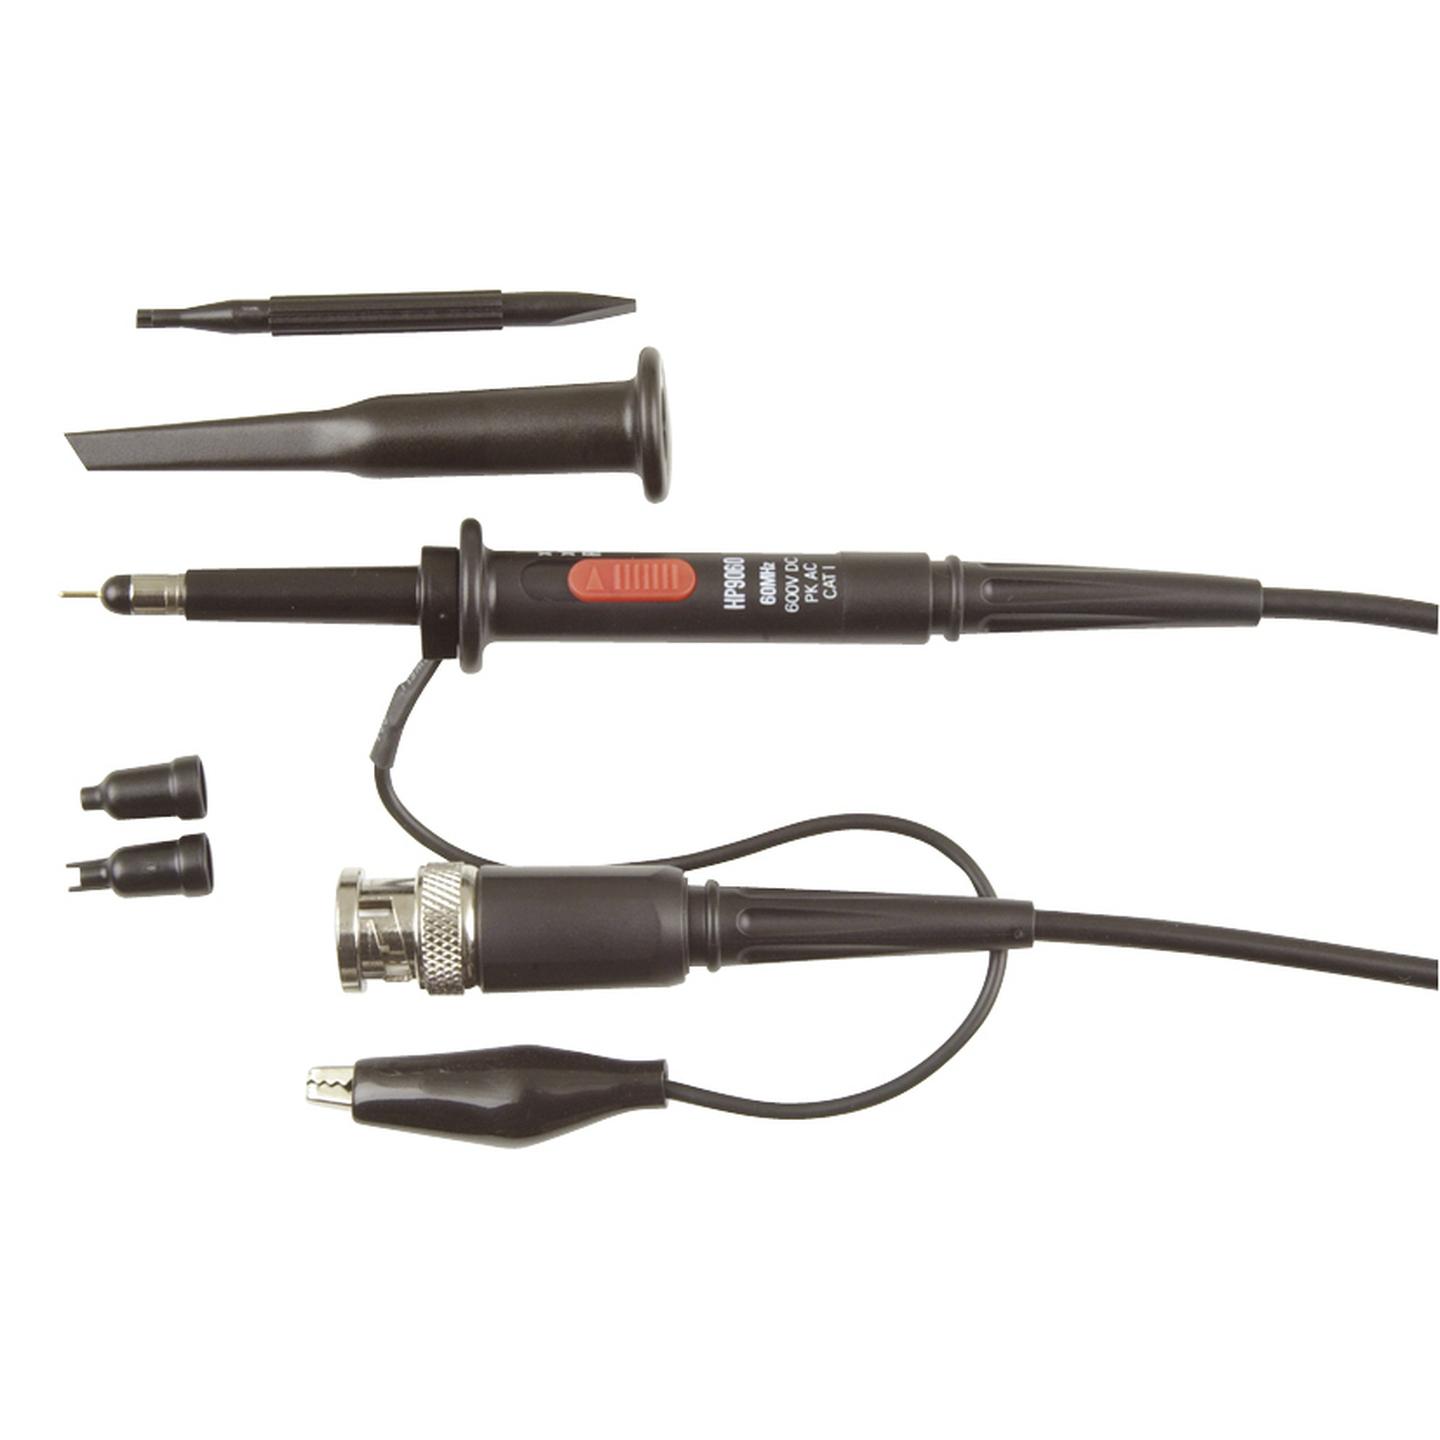 CRO Oscilloscope Probe Cable Set